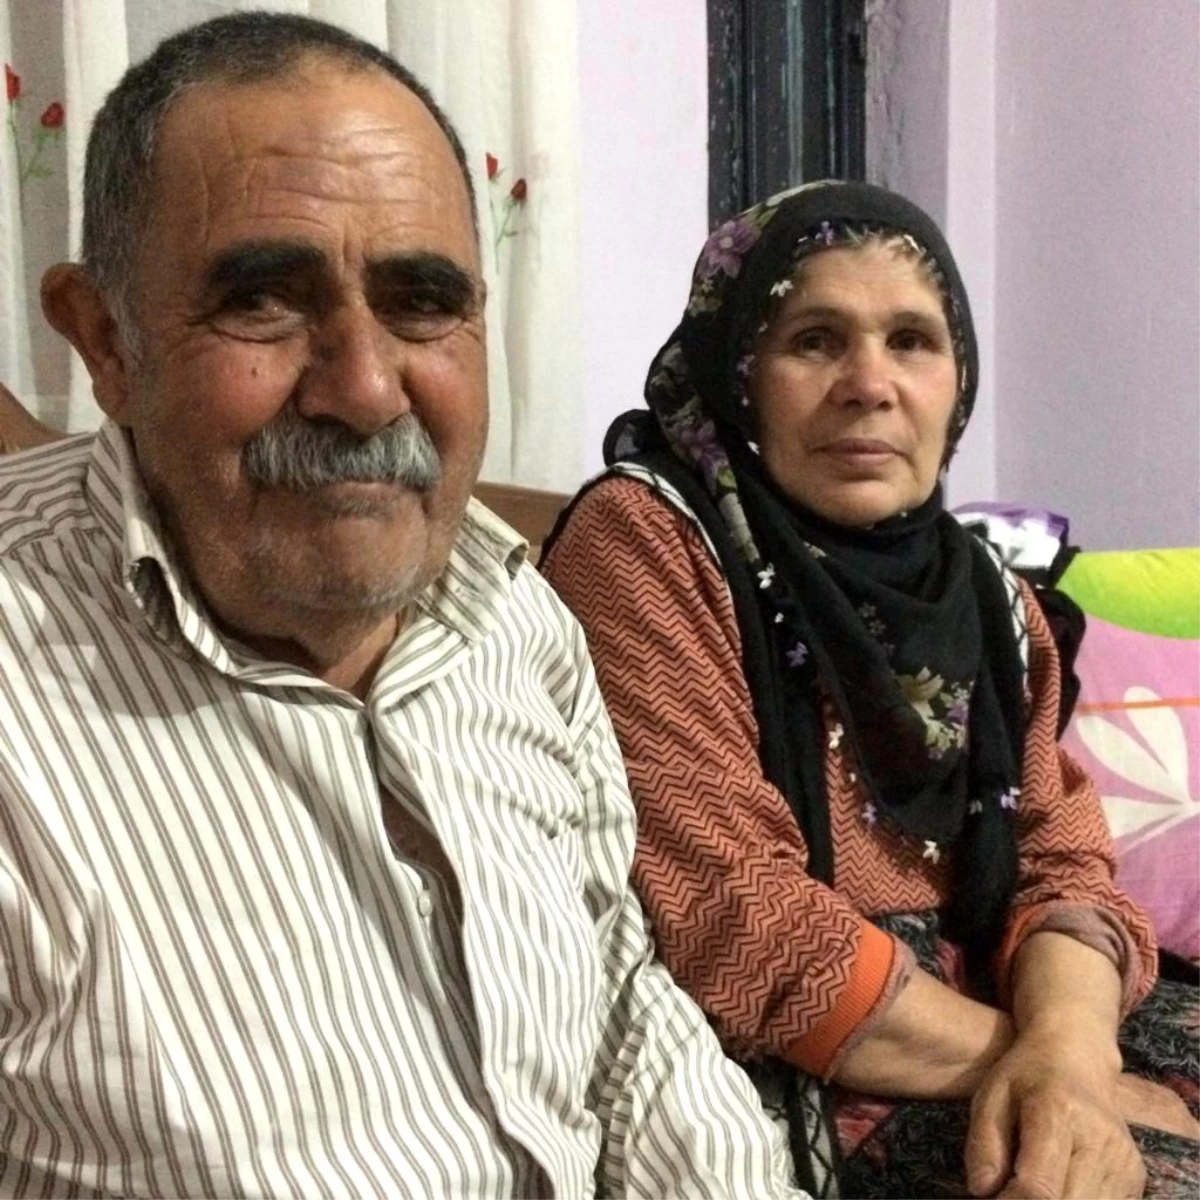 "Ölürsek inşallah birlikte ölürüz" diye dua eden çift, 3 saat arayla hayatını kaybetti